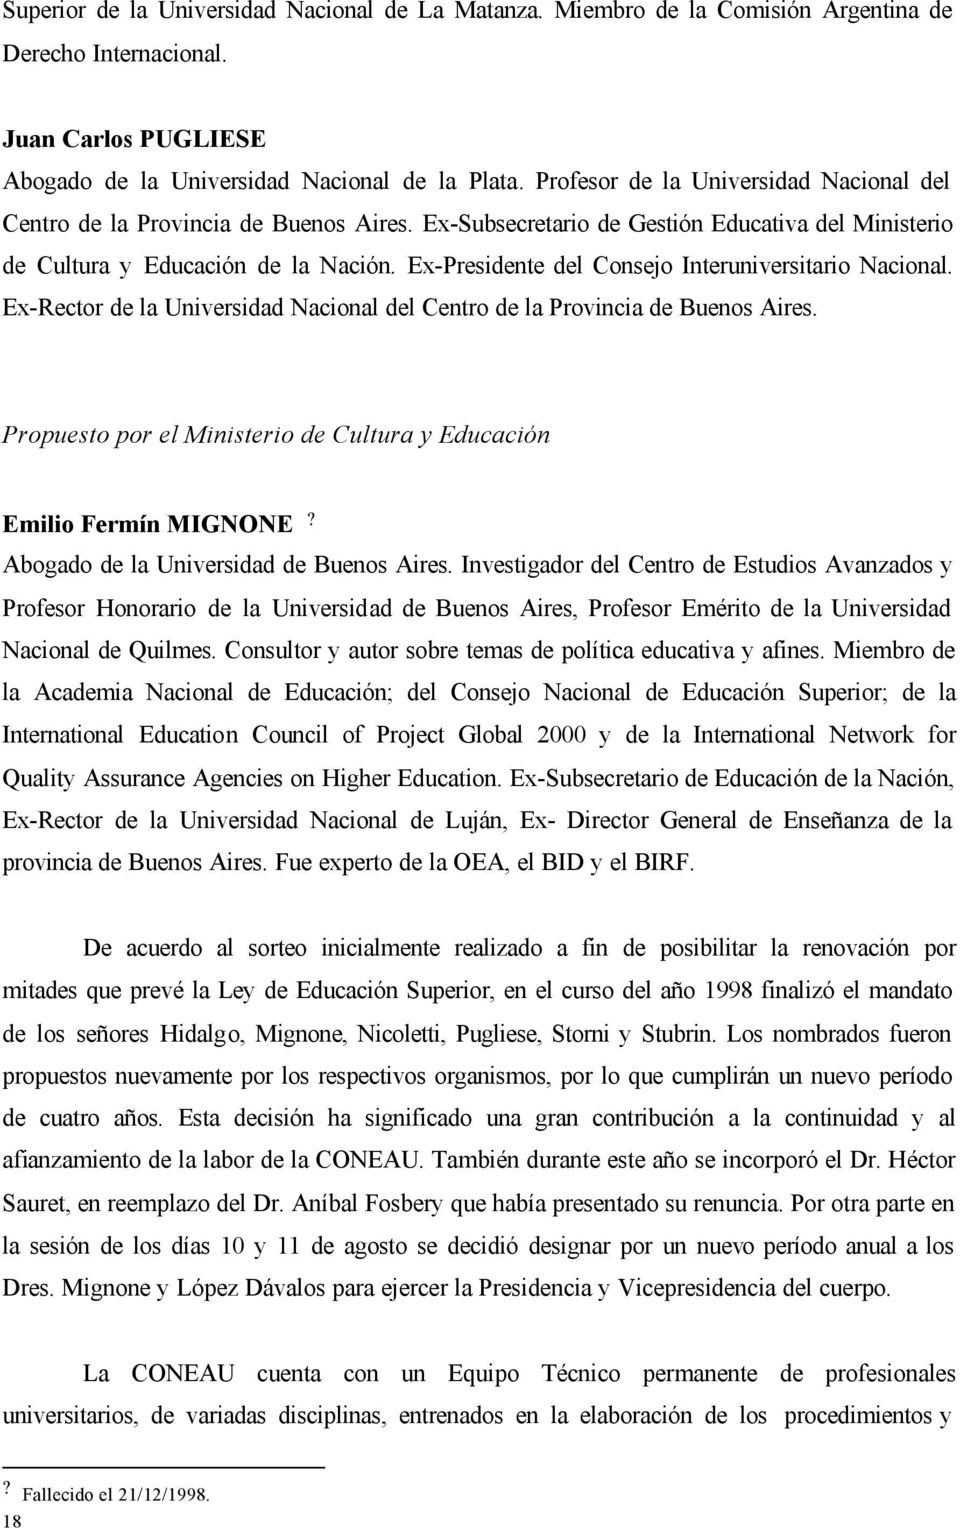 Ex-Presidente del Consejo Interuniversitario Nacional. Ex-Rector de la Universidad Nacional del Centro de la Provincia de Buenos Aires.